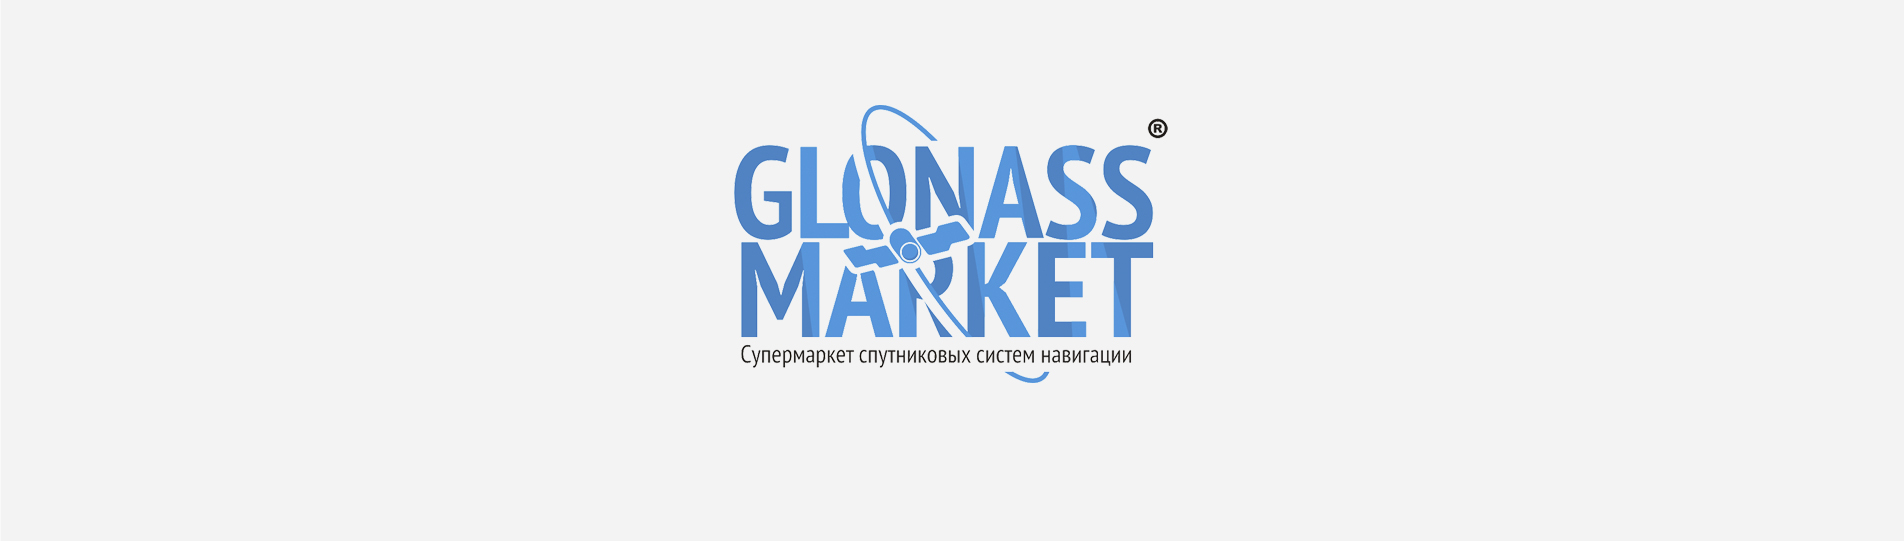 GlonassMarket